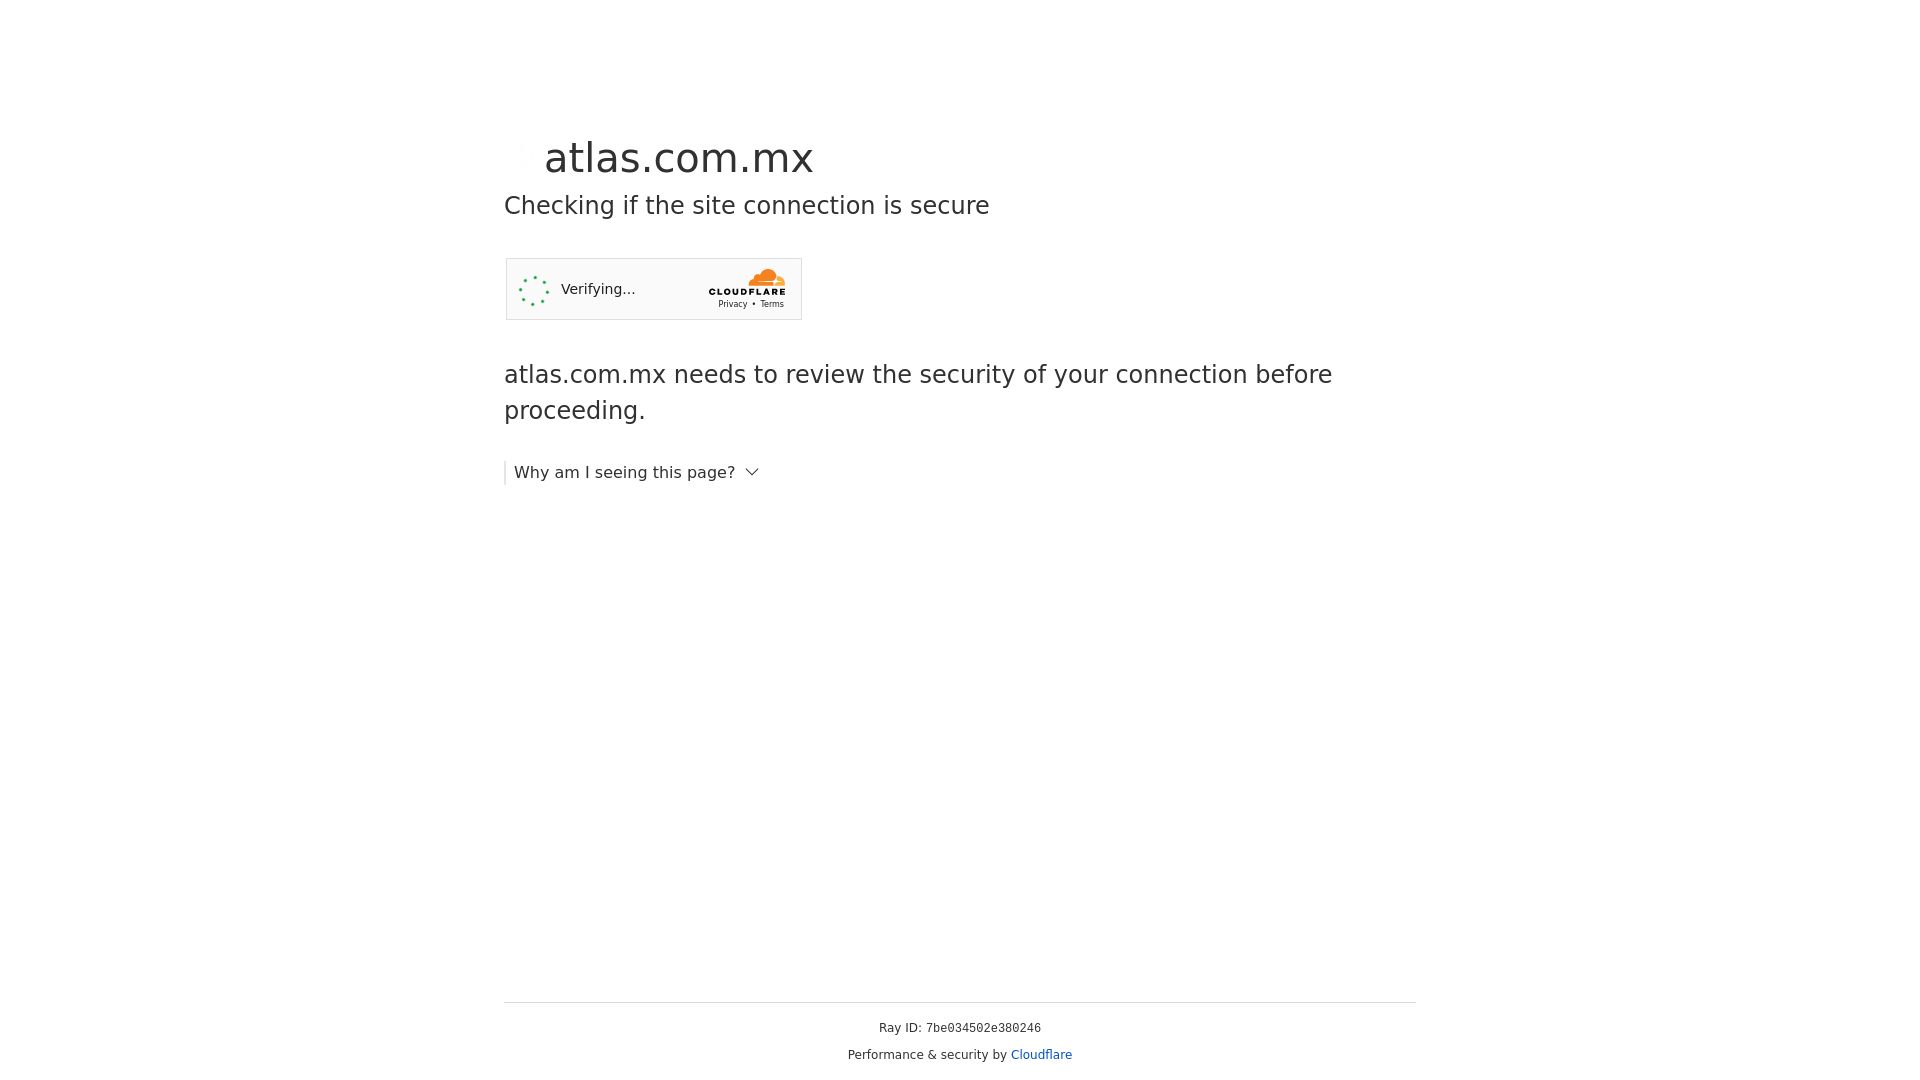 Website status atlas.com.mx is   ONLINE